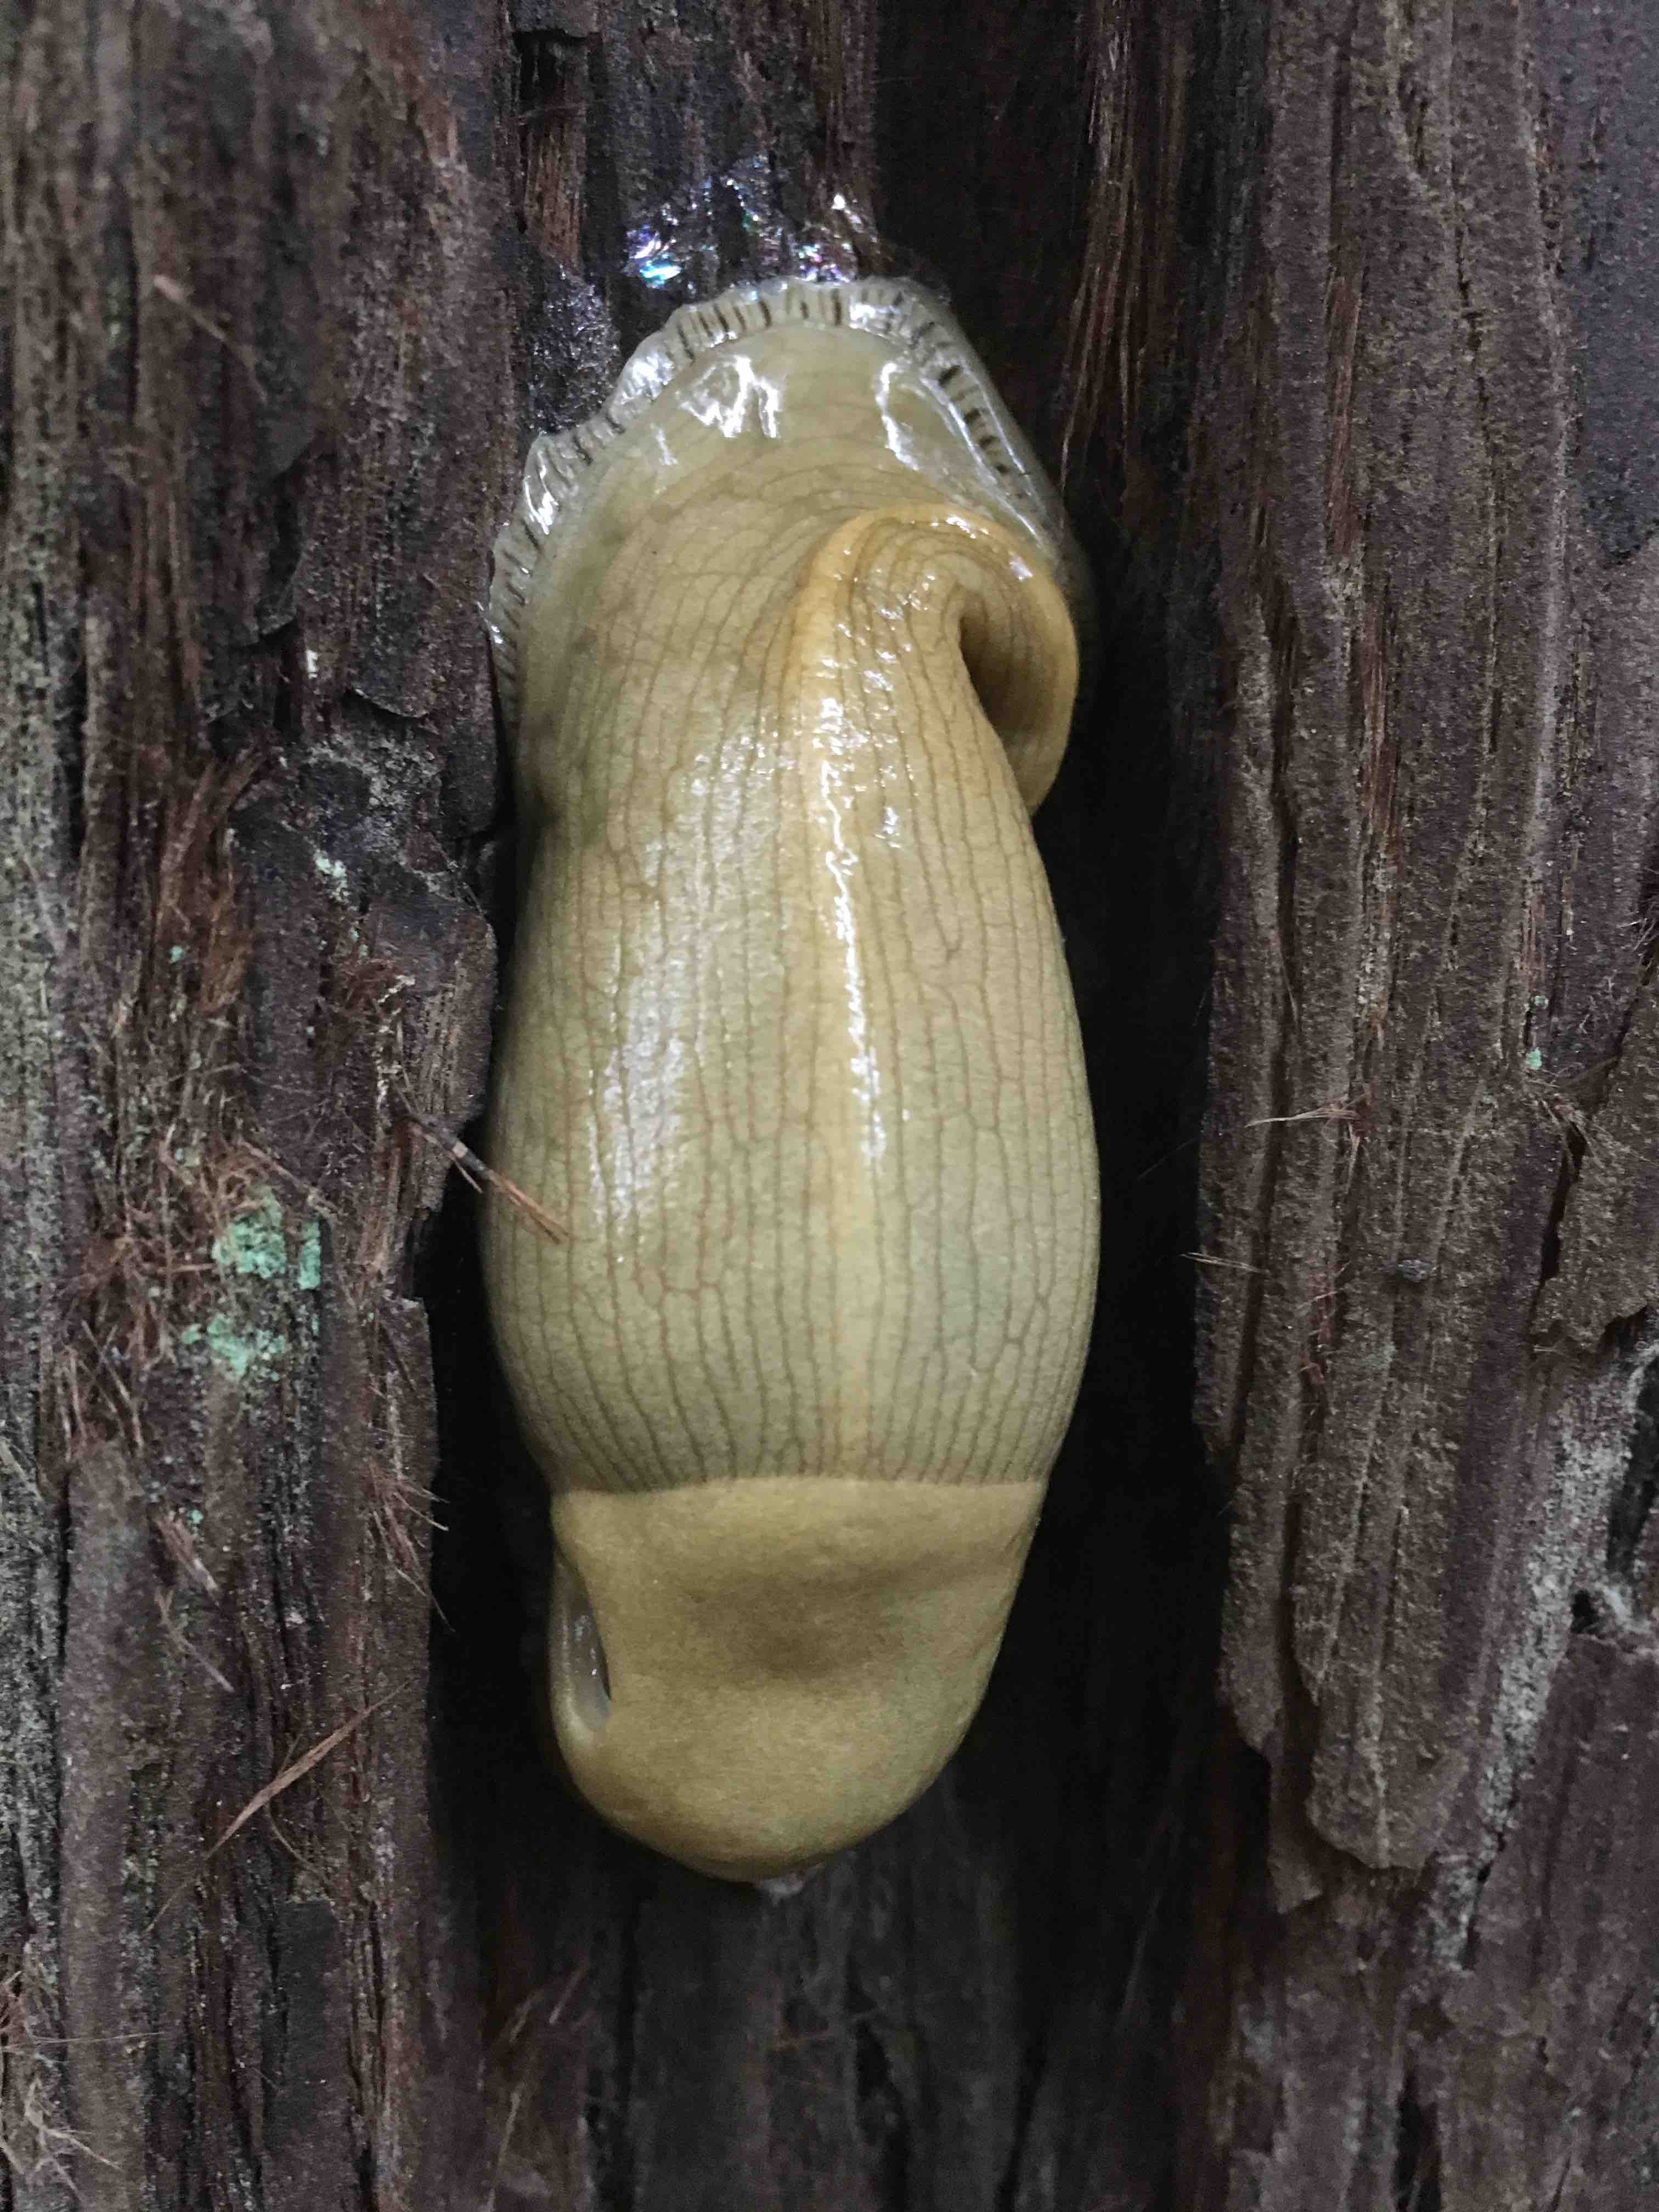 banana slugs protect redwoods